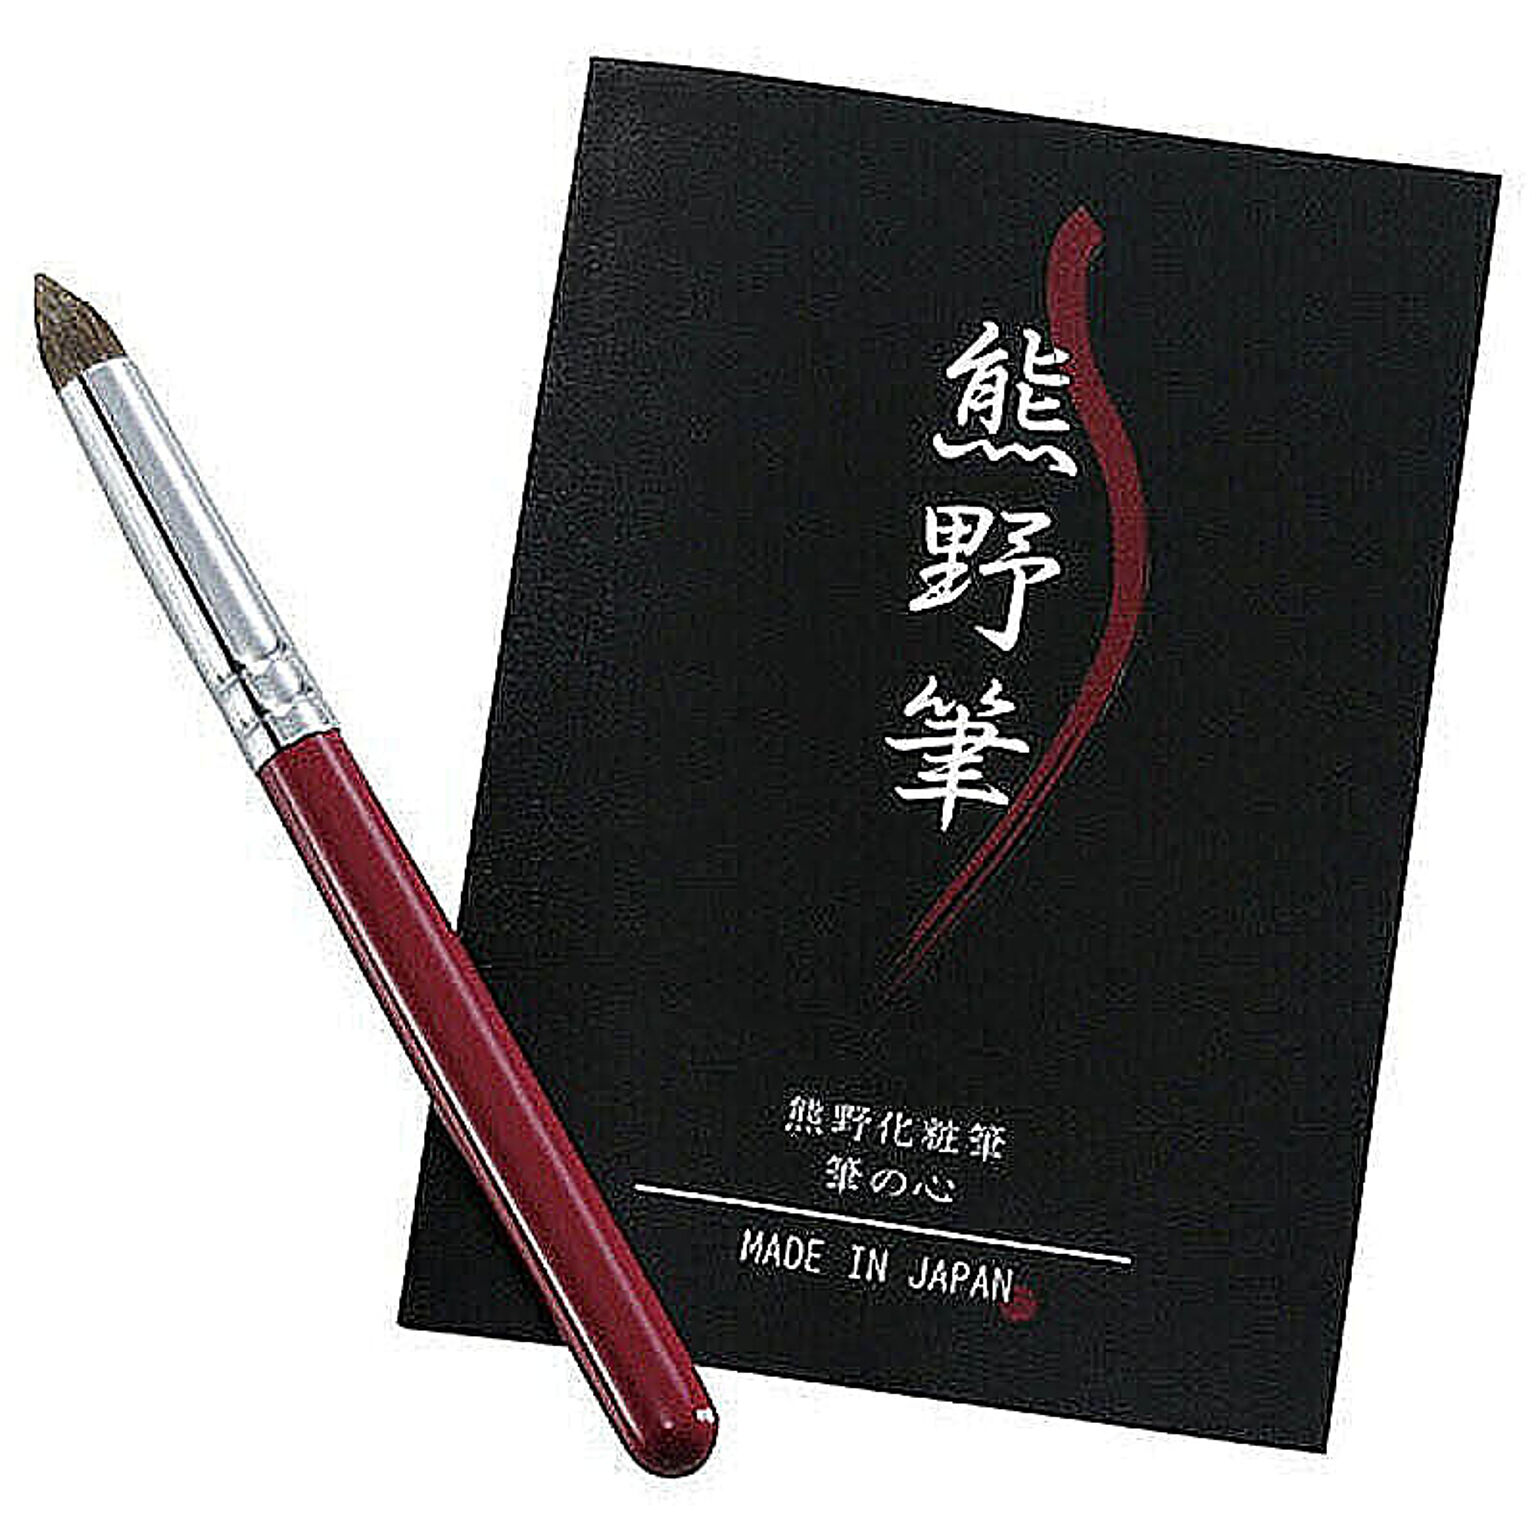 熊野化粧筆 筆の心 アイシャドウブラシ K20202810 管理No. 4571100802352